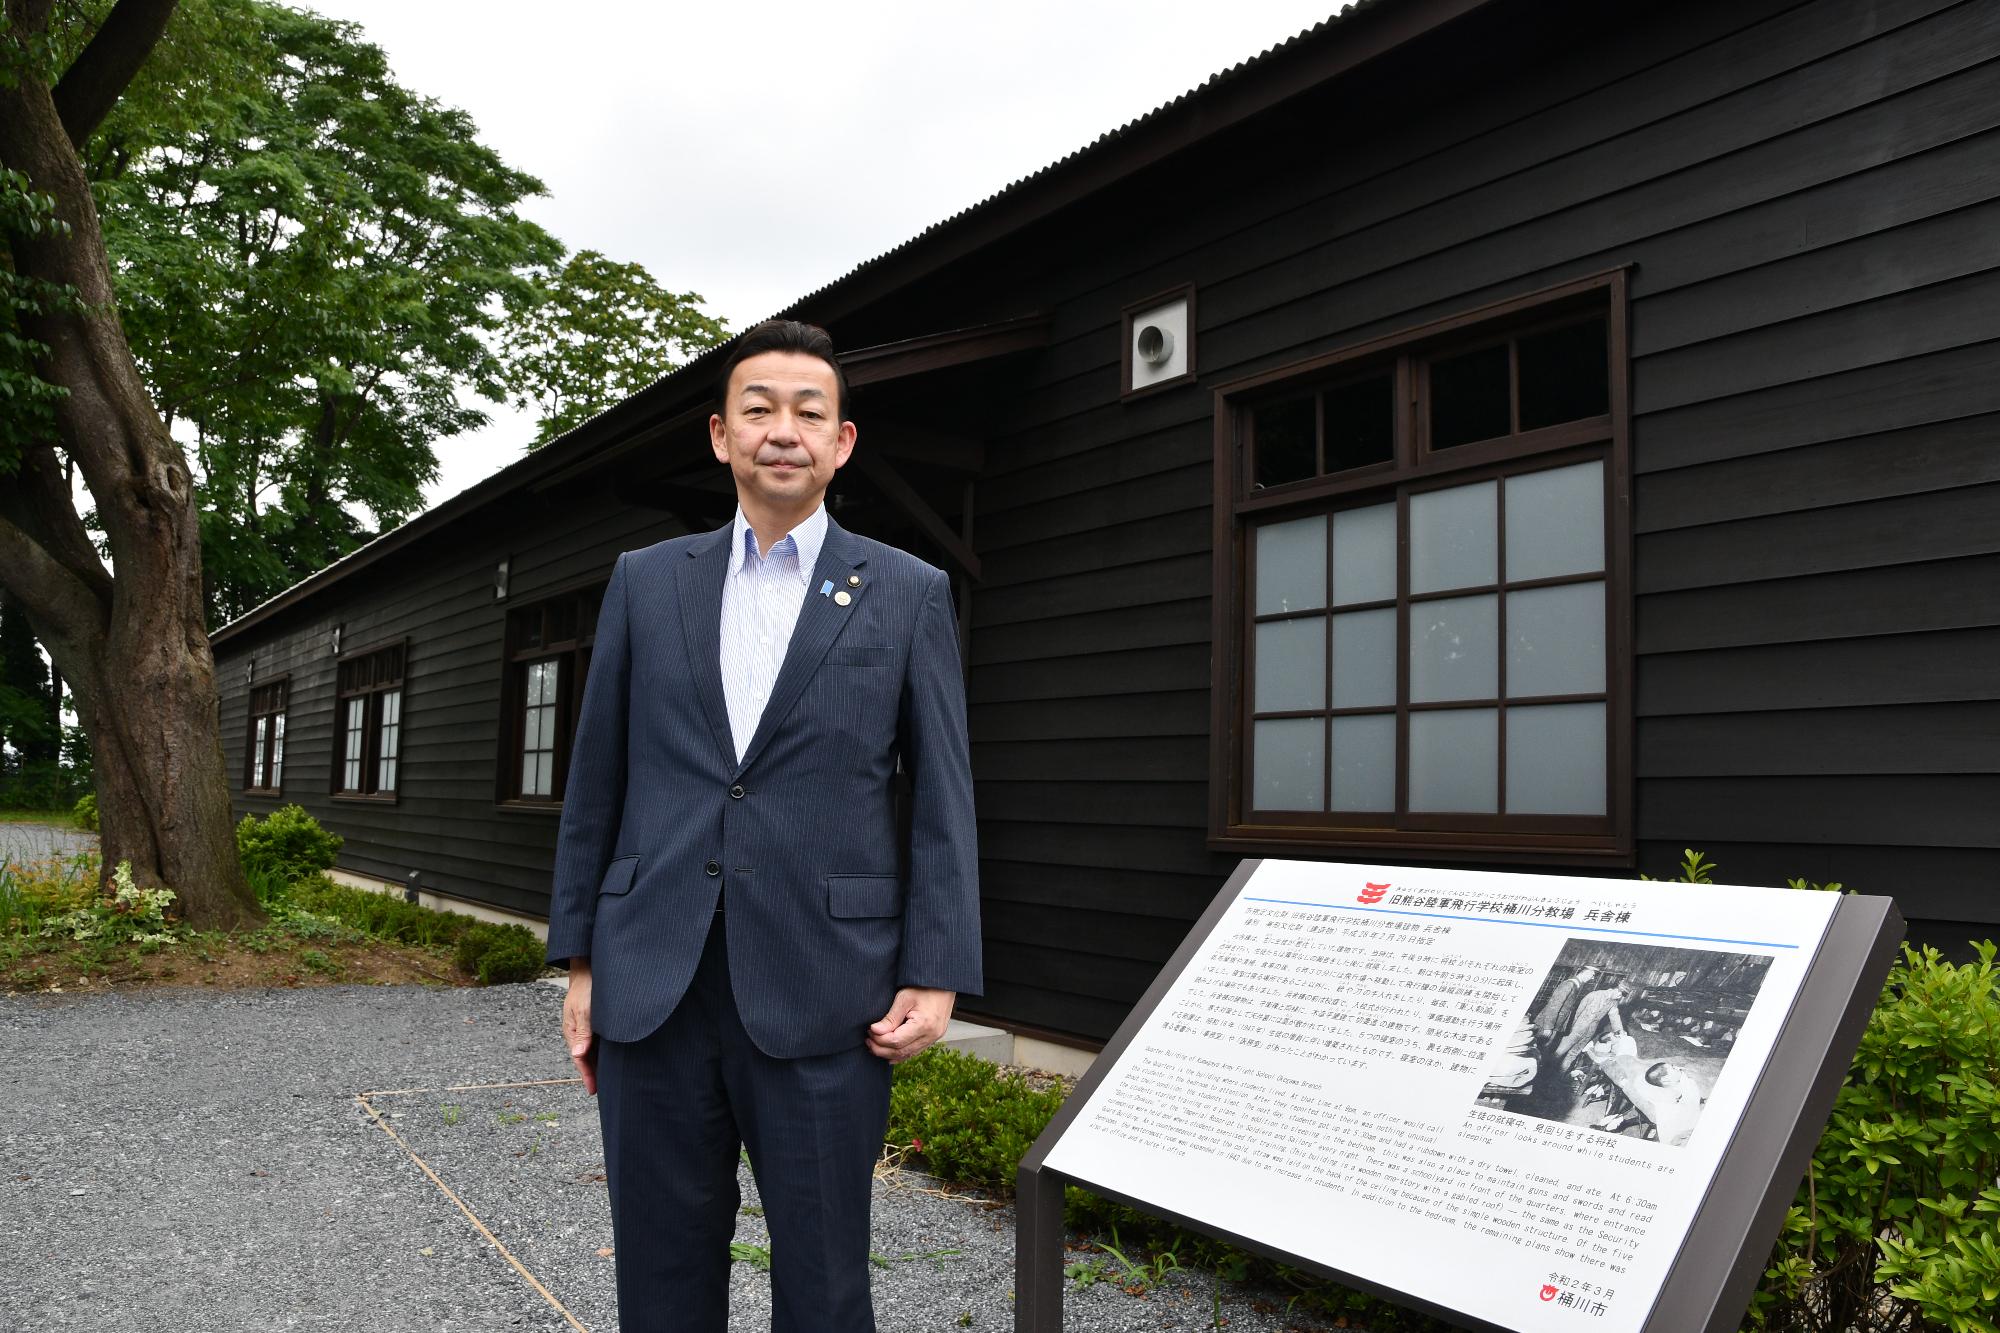 桶川飛行学校平和祈念館の前に小野市長が立っている写真。